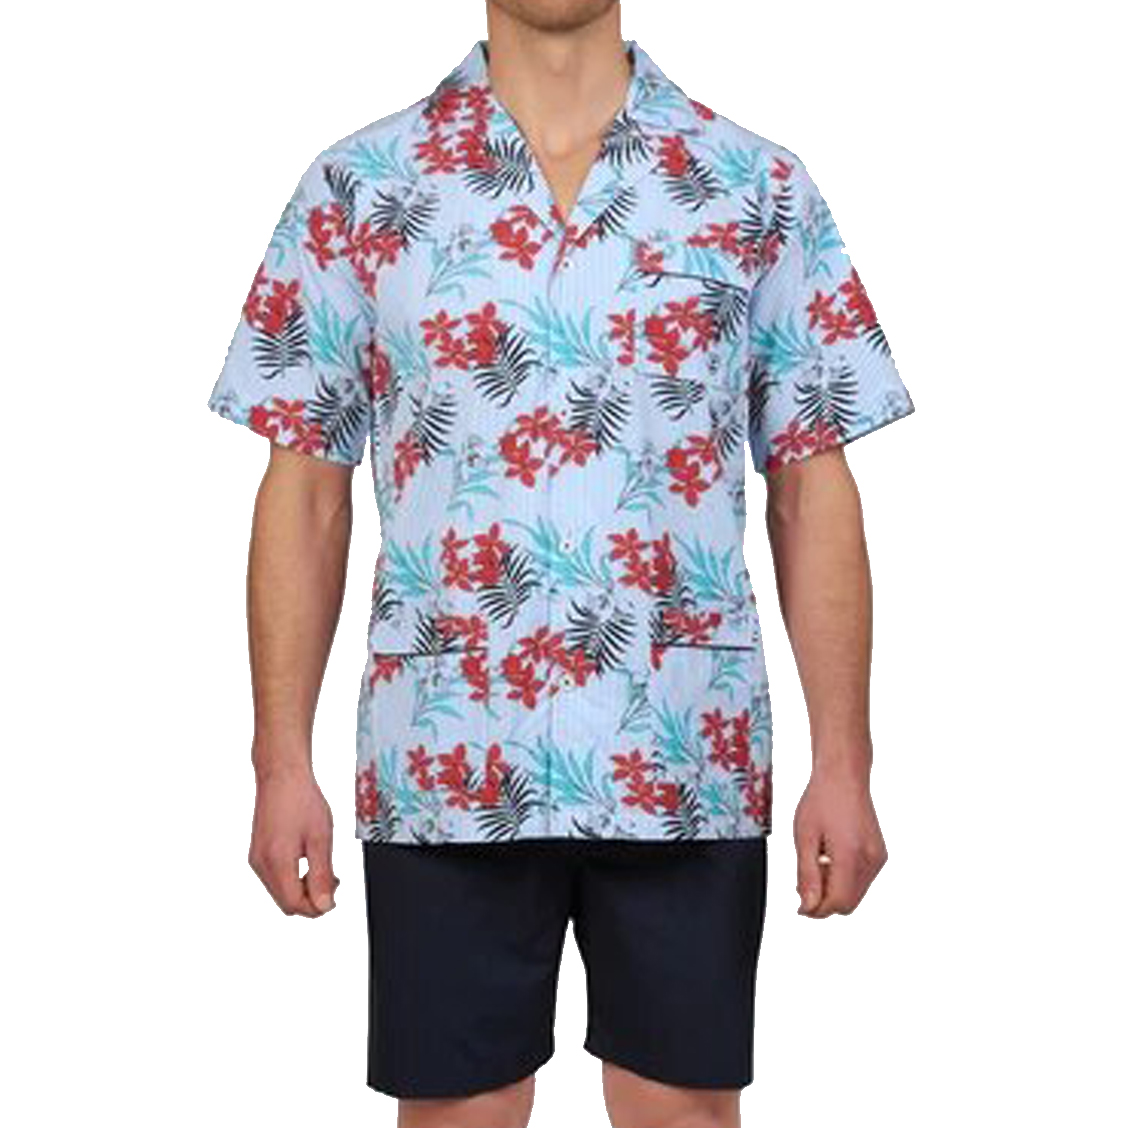 Pyjama court Mariner en coton : chemise rayée bleu ciel et blanc à motifs fleurs rouges et vertes et